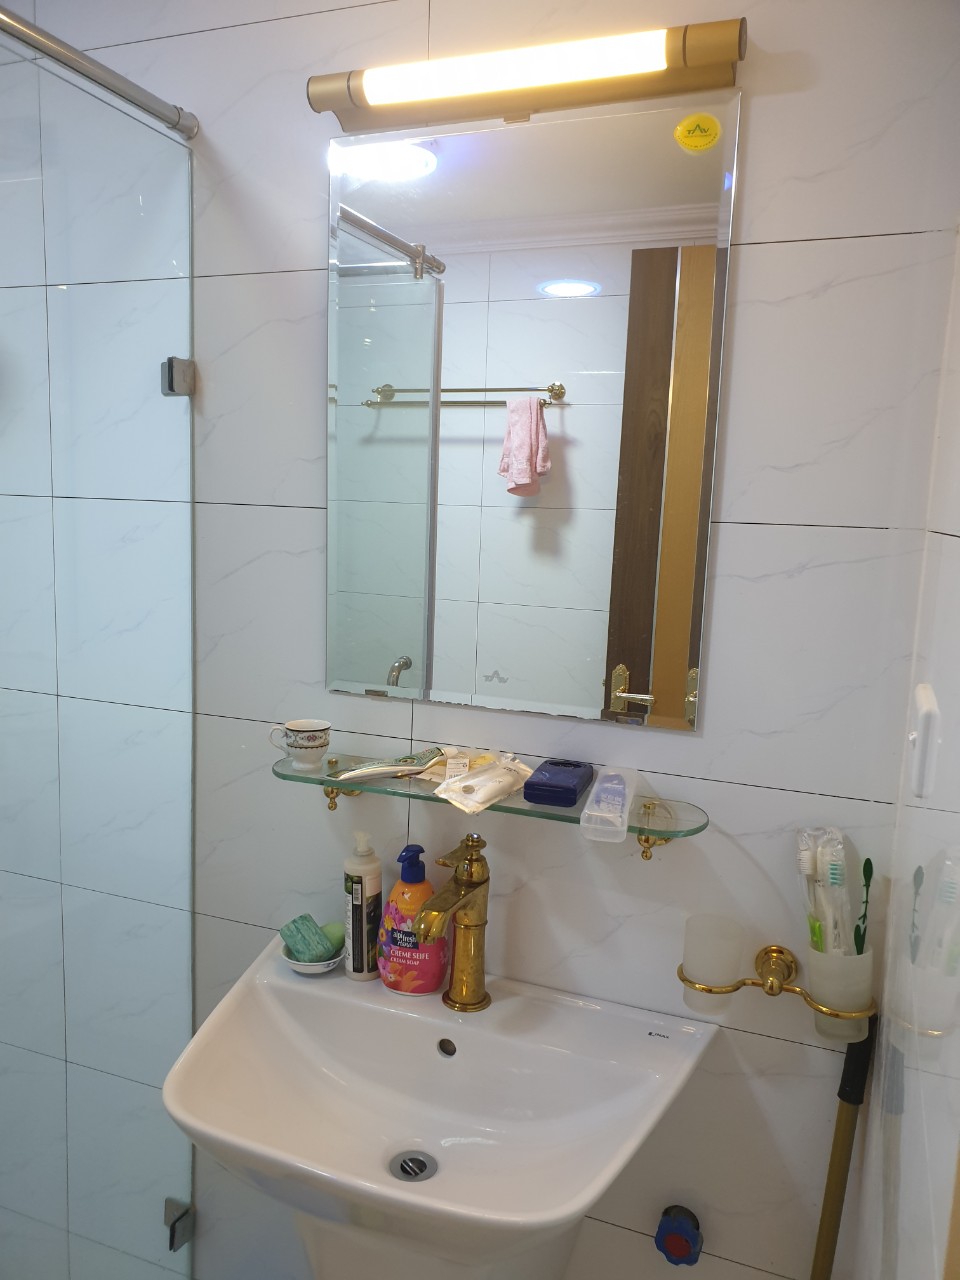 Cho thuê căn hộ 3 ngủ diện tích 110m2 dự án Tân Hoàng Minh - Quảng An, nội thất cao cấp, giá 35tr/tháng
 1024134